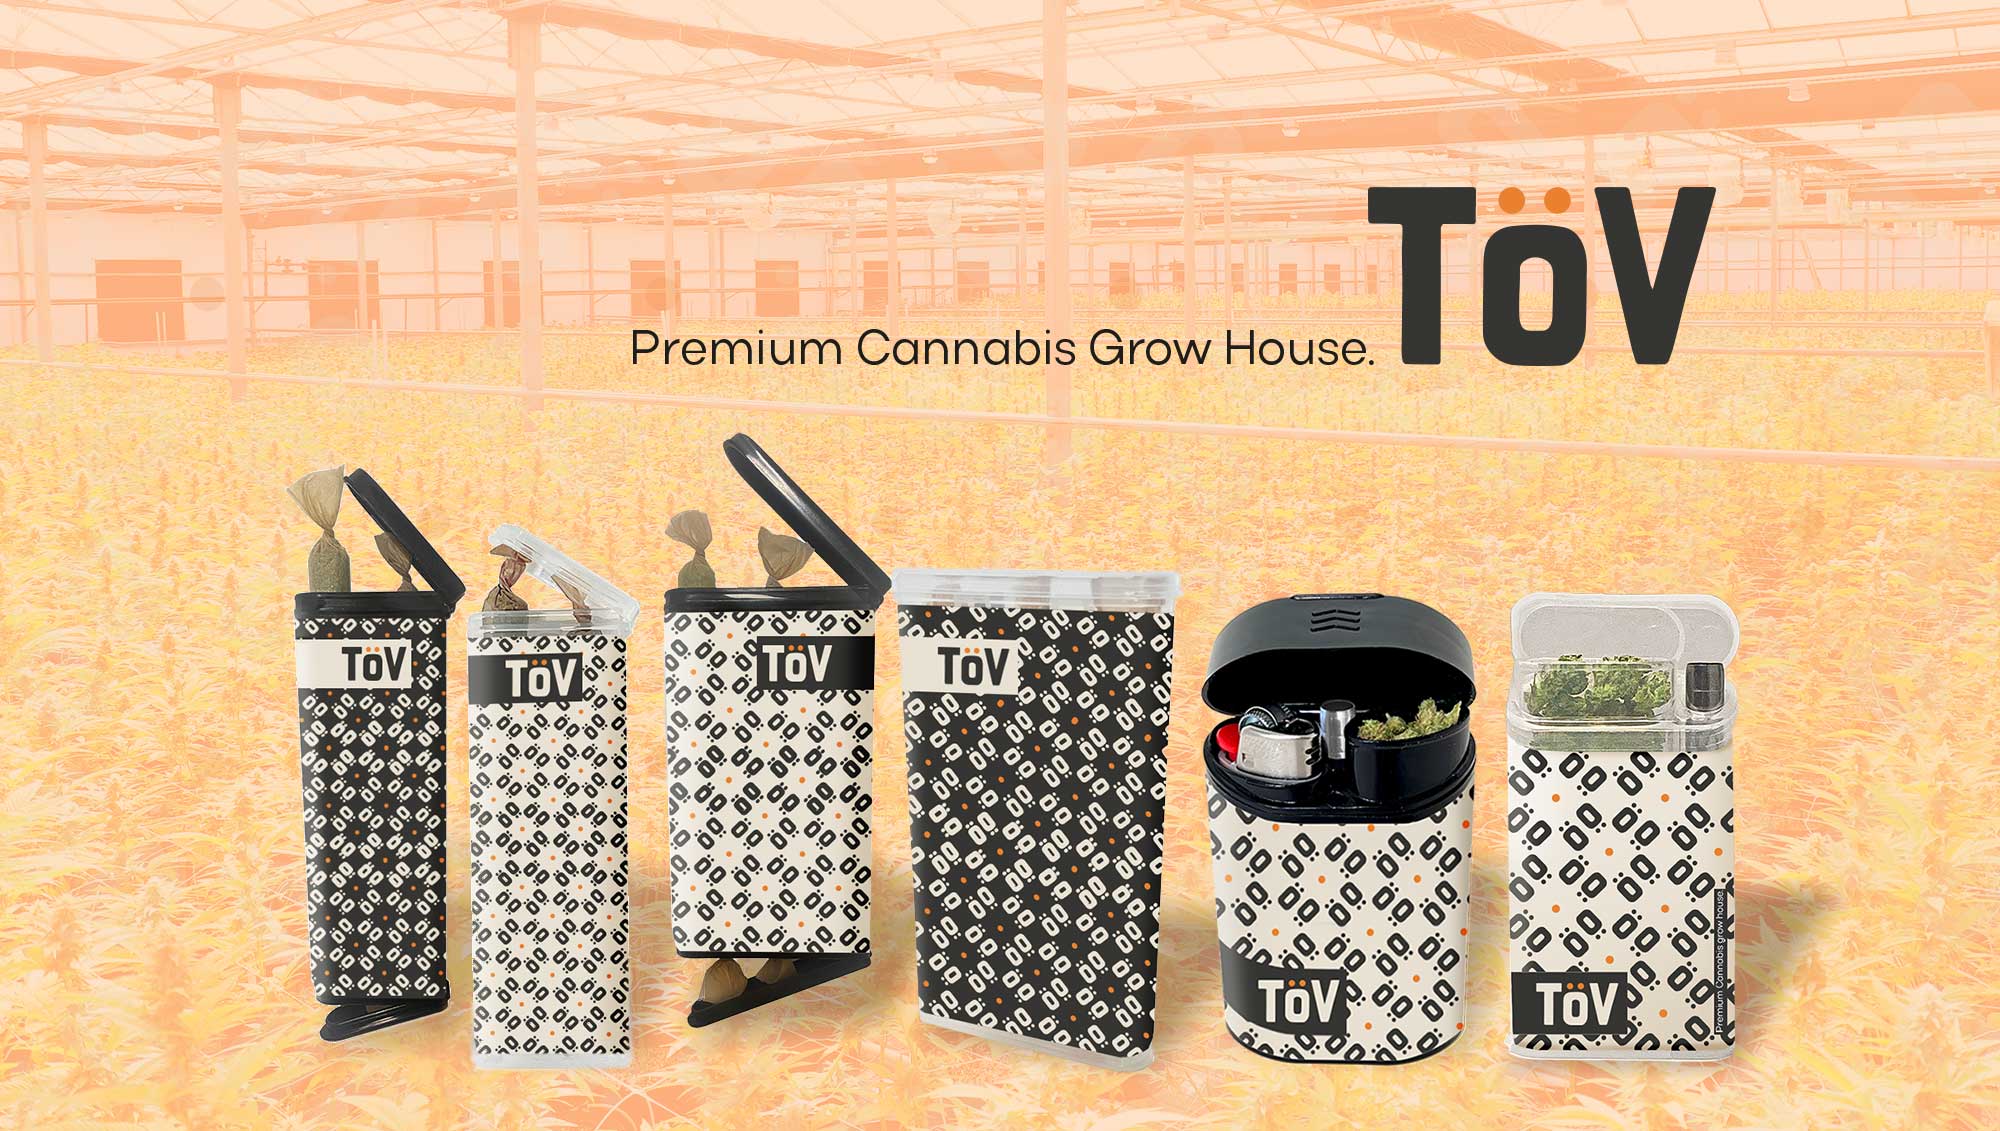 Tov - premium cannabis grow house